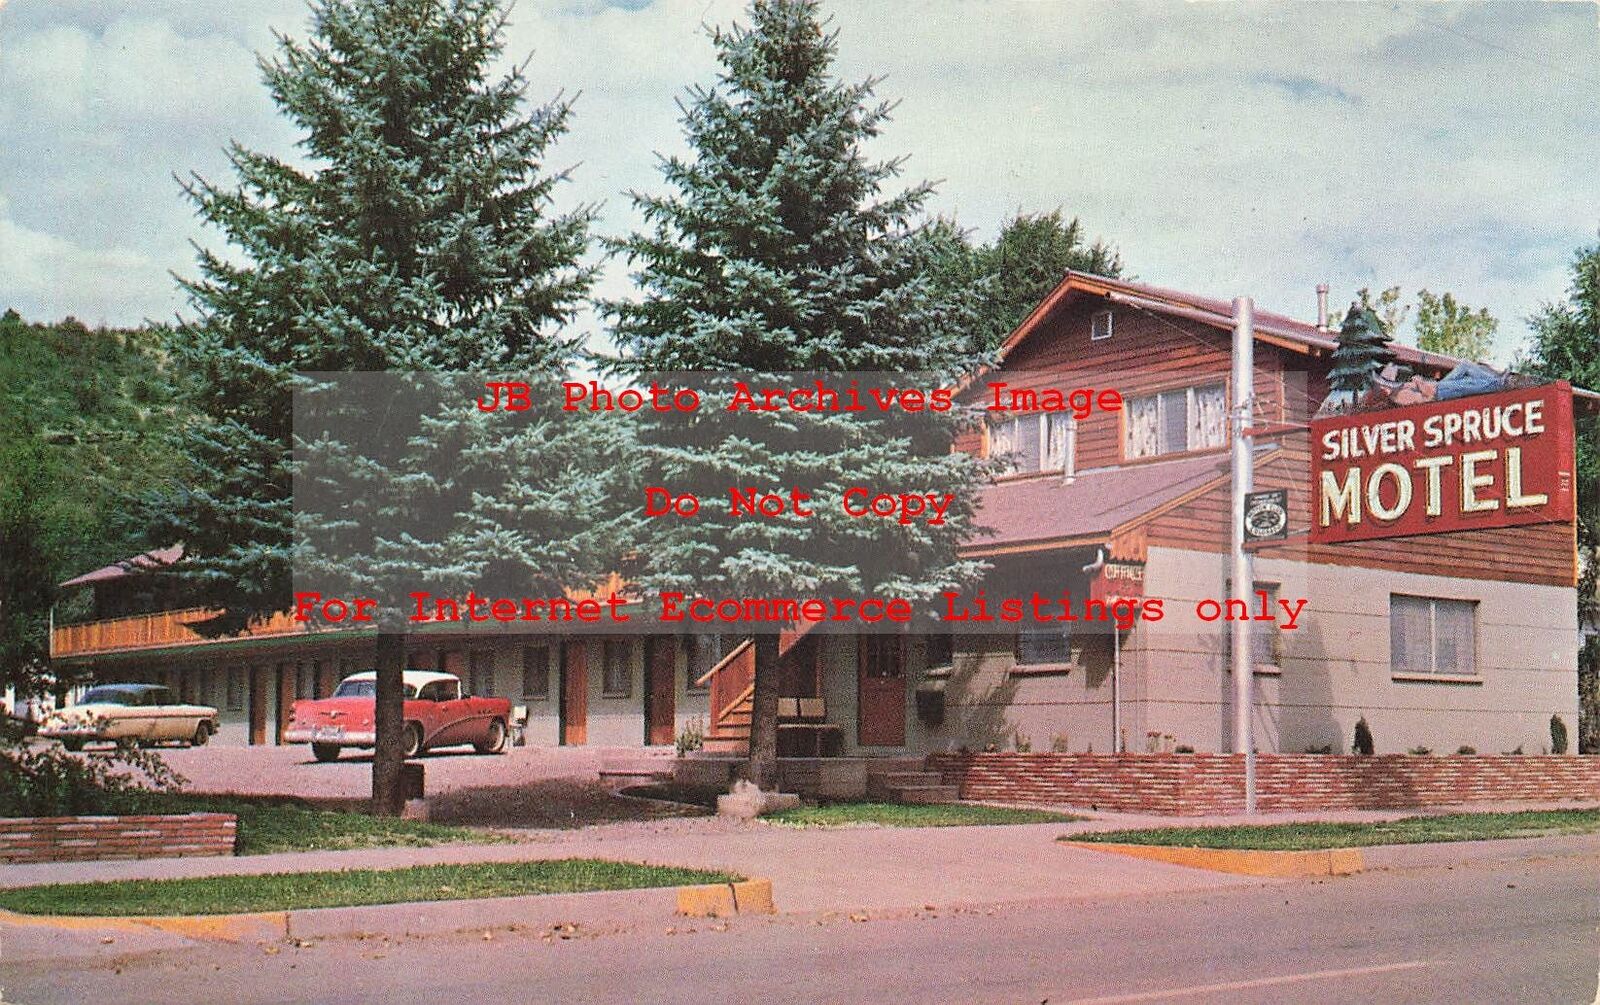 CO, Durango, Colorado, Silver Spruce Motel, Partridge Studio Pub No RY-9449